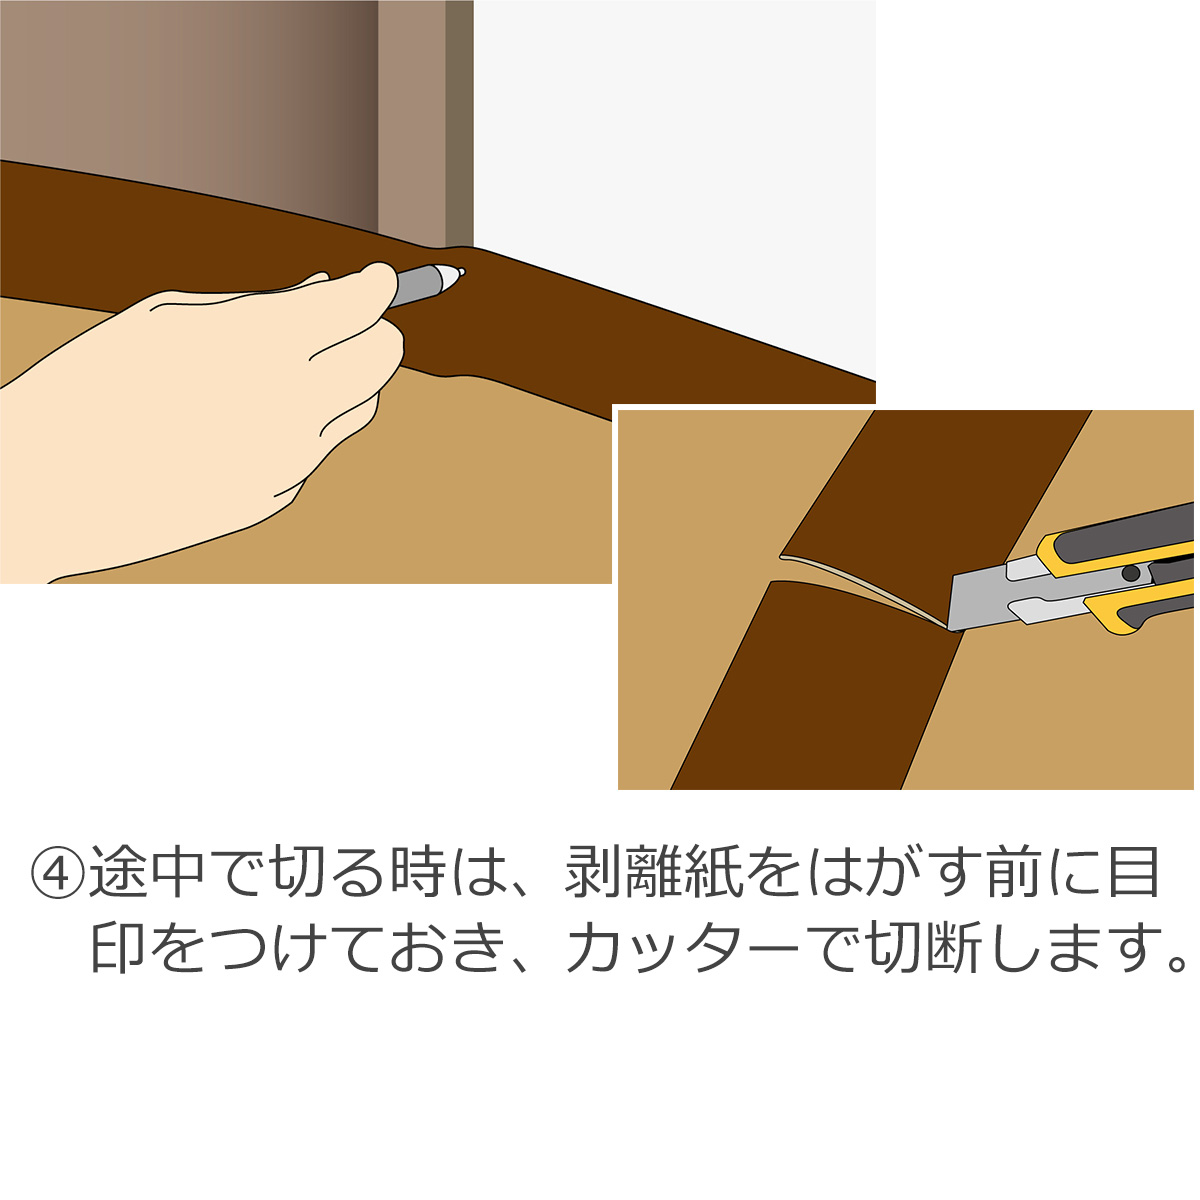 途中で切る時は、剥離紙をはがす前に目印をつけておき、カッターで切断します